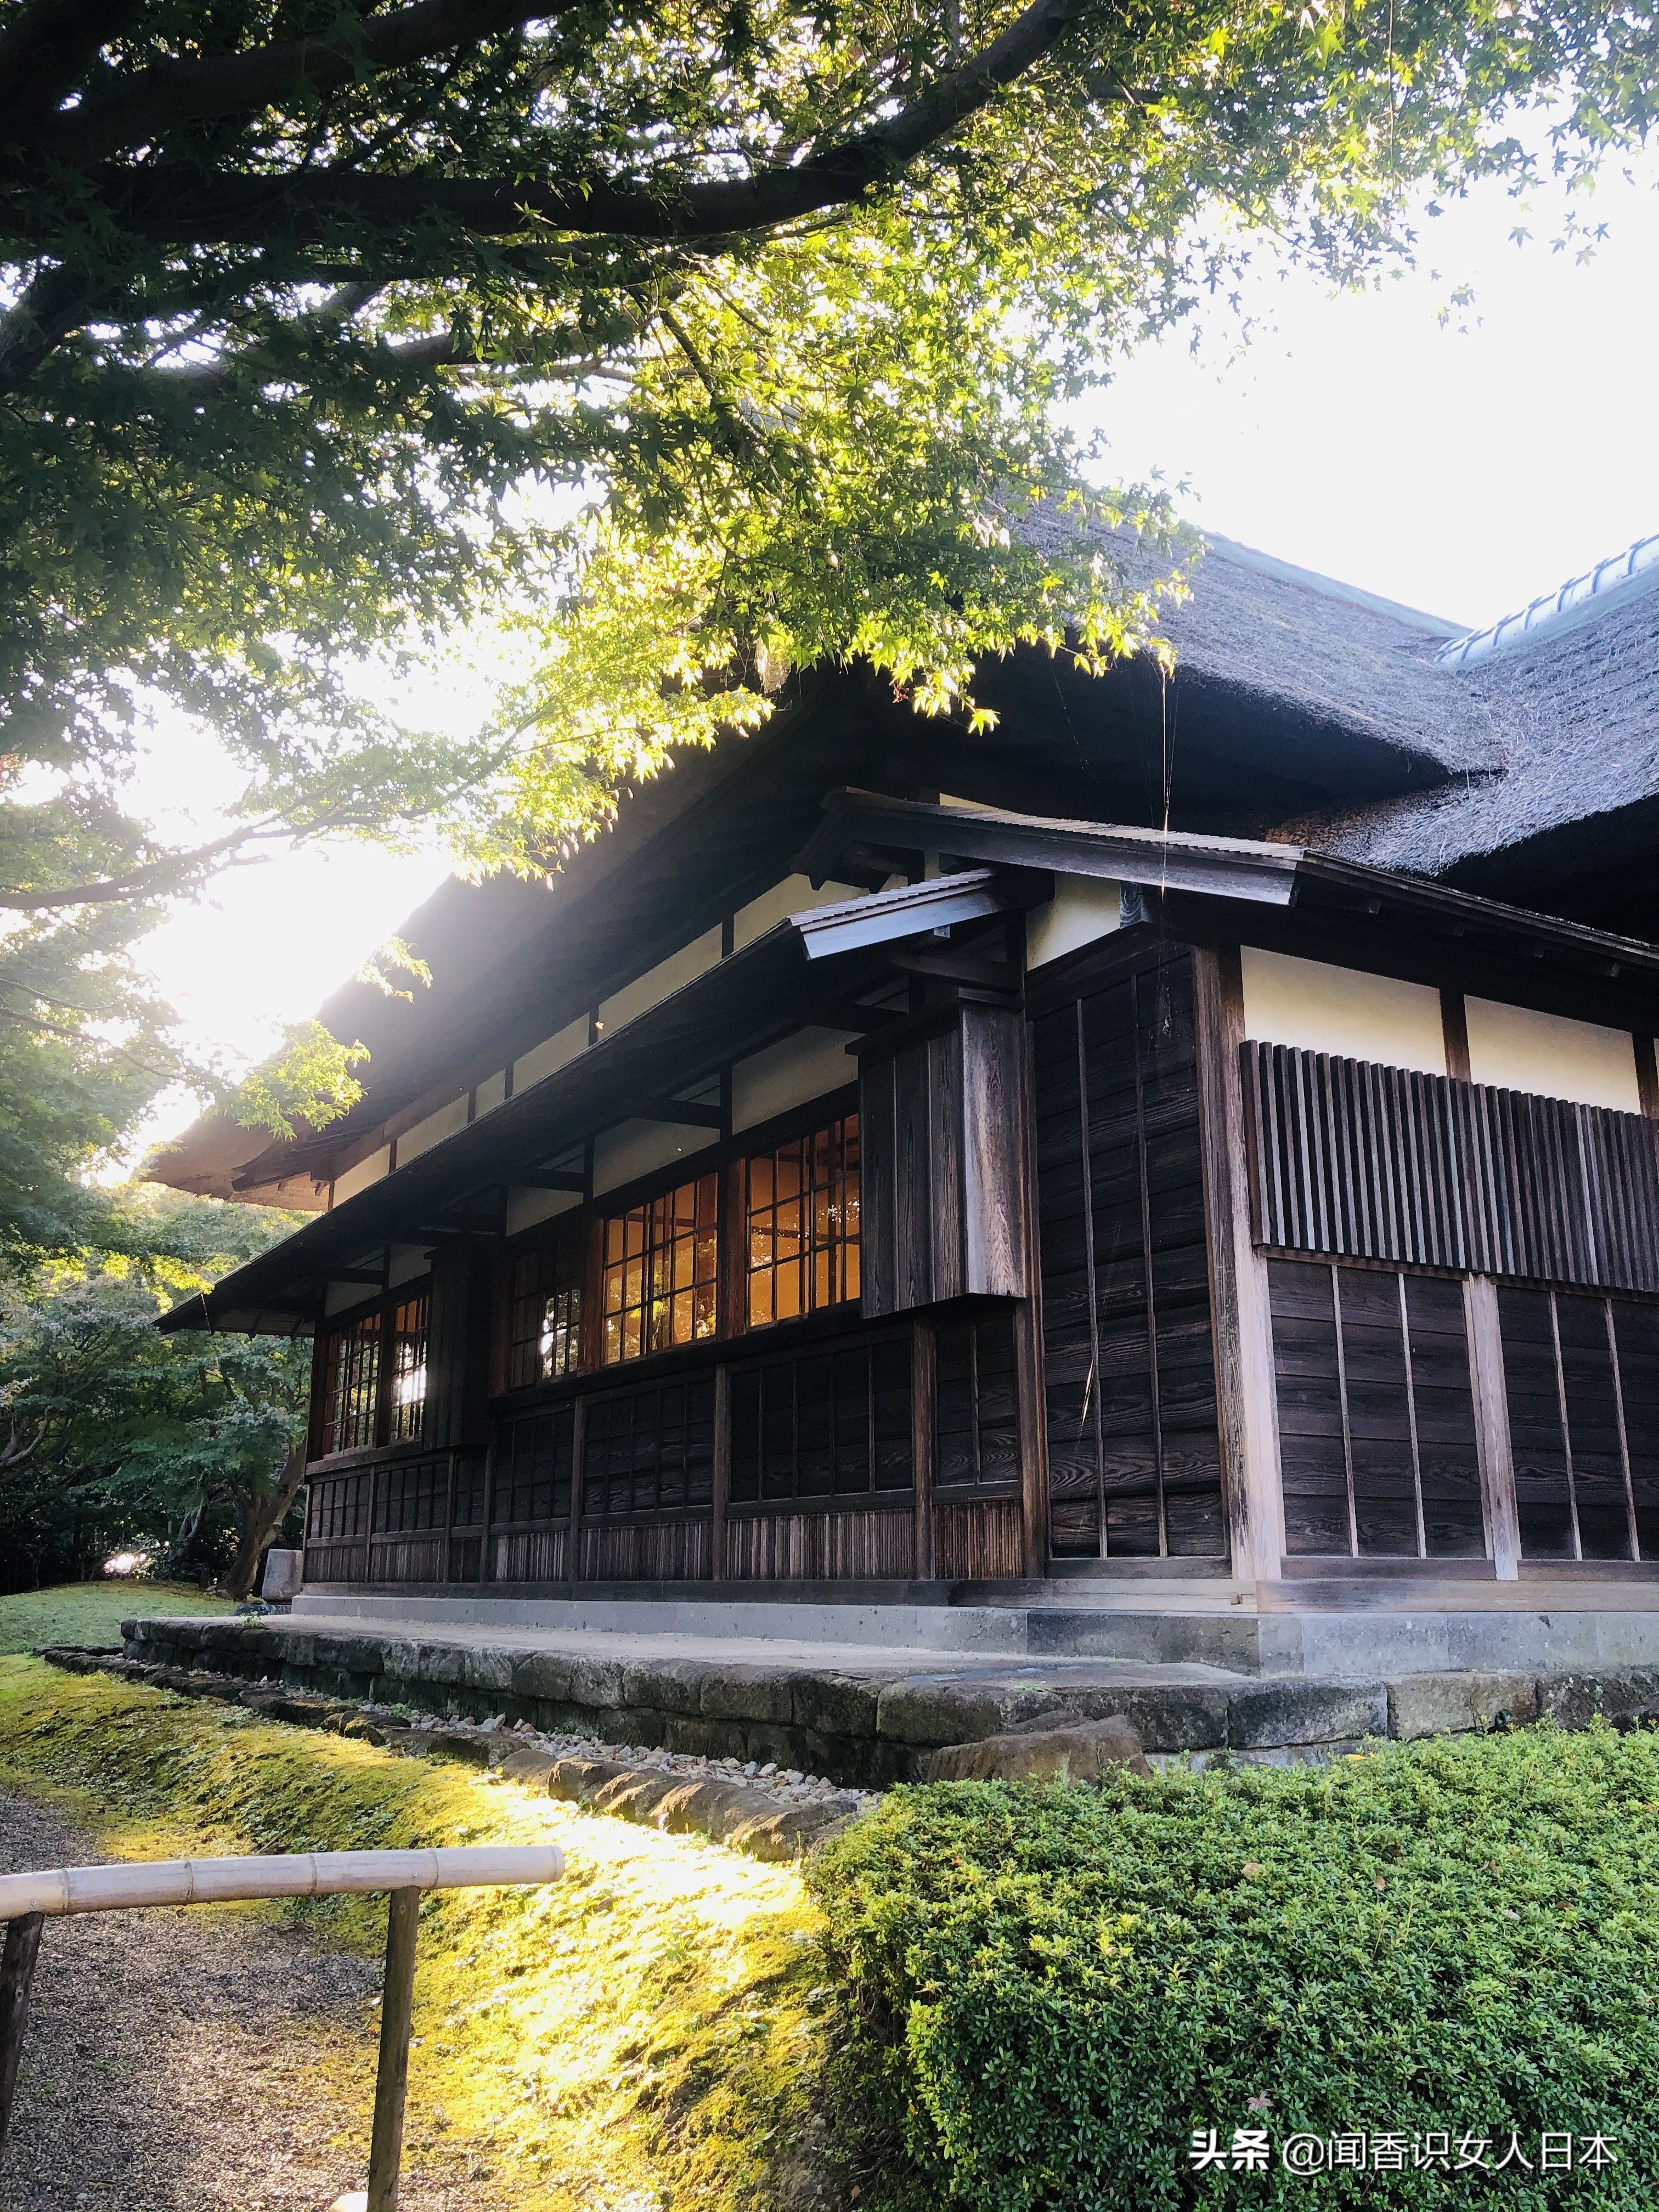 橫濱三溪園一代實業家打造的日式庭園 17座建築來自京都和鎌倉 中國熱點